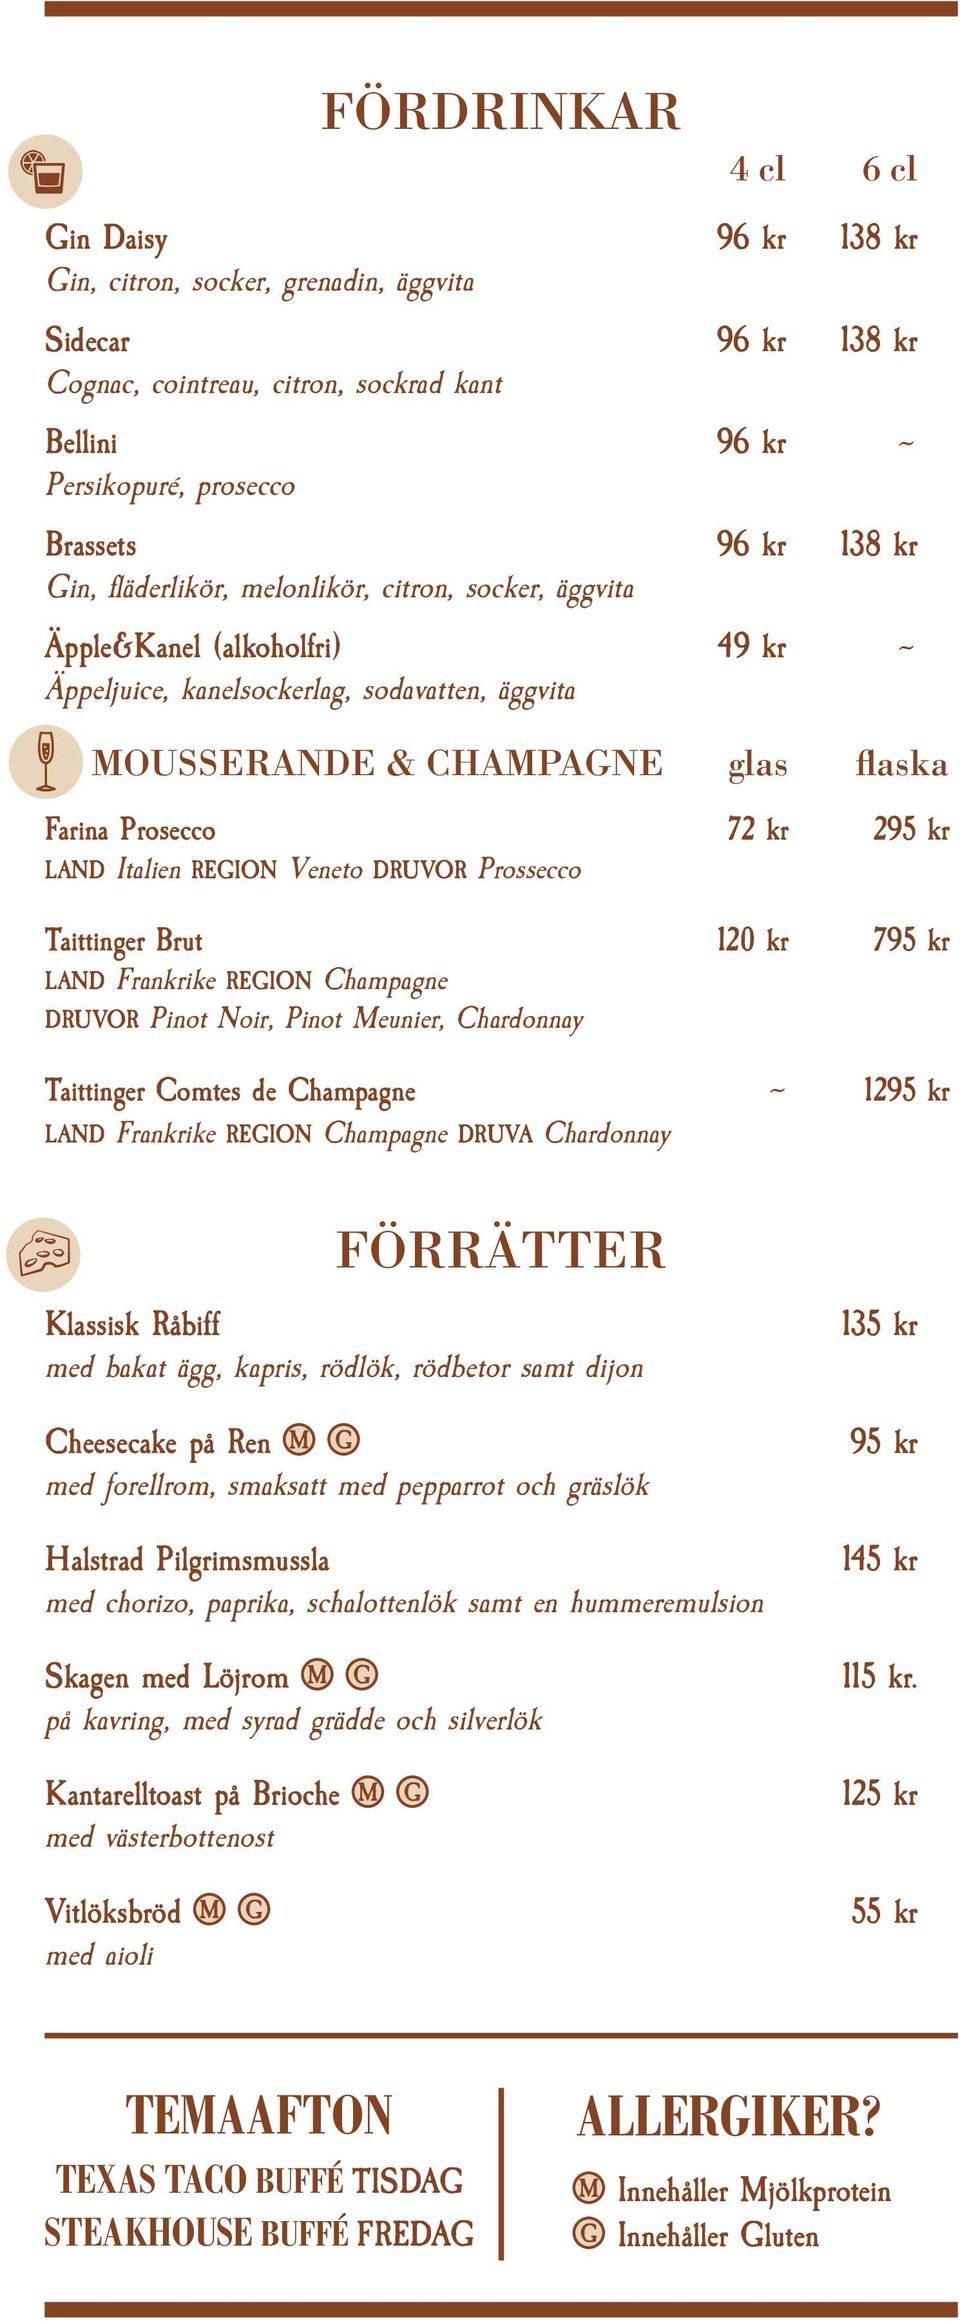 295 kr LAND Italien REGION Veneto DRUVOR Prossecco Taittinger Brut 120 kr 795 kr LAND Frankrike REGION Champagne DRUVOR Pinot Noir, Pinot Meunier, Chardonnay Taittinger Comtes de Champagne ~ LAND